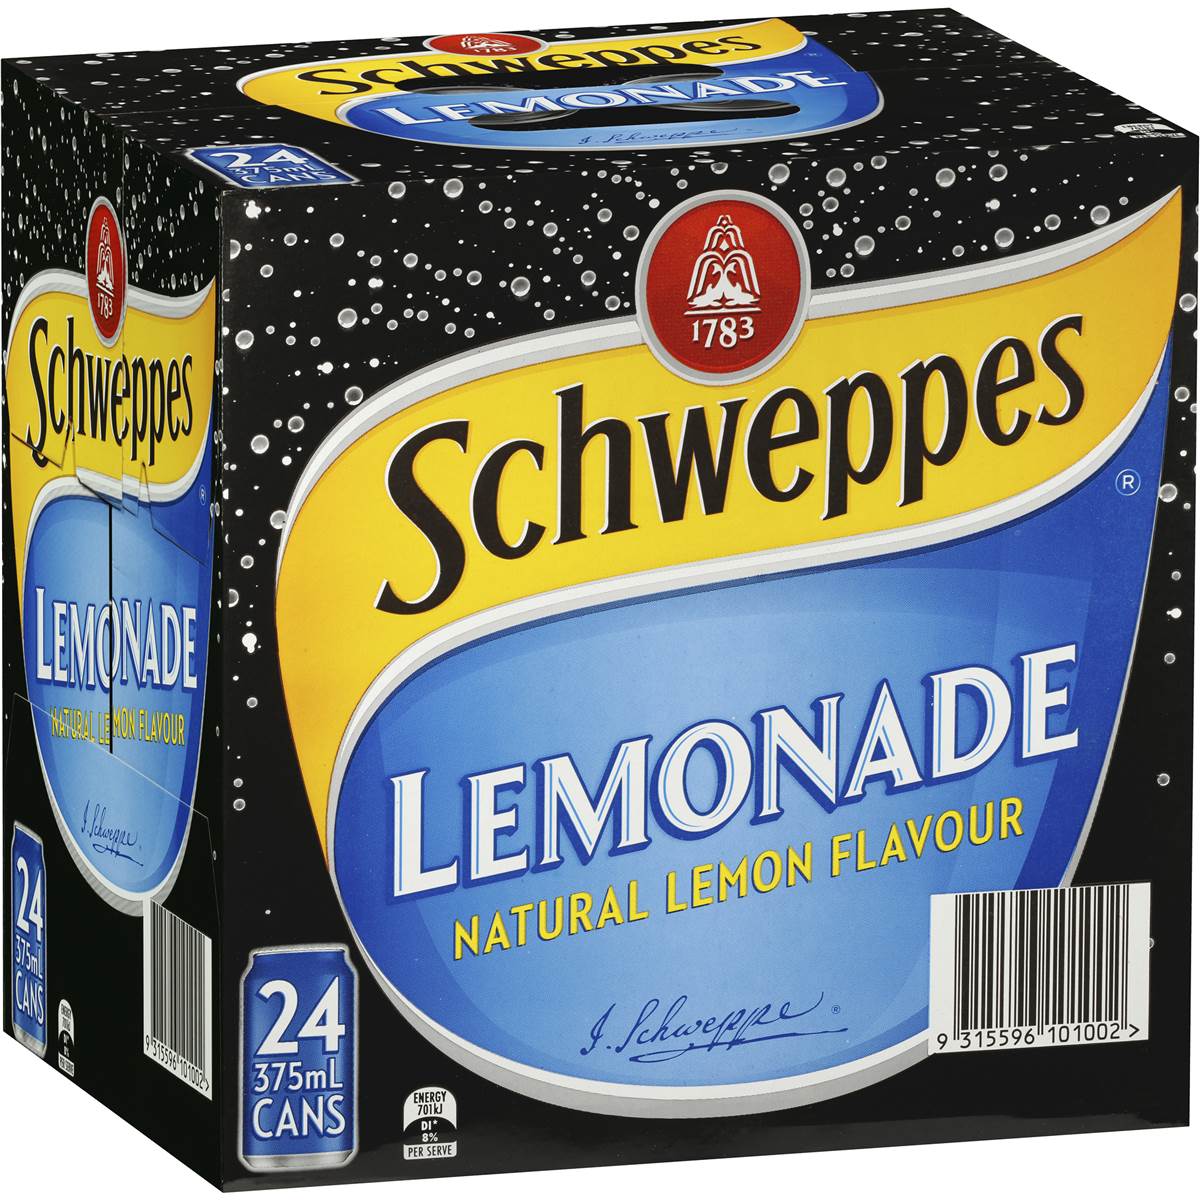 Schweppes Lemonade Cans 375ml 24pk